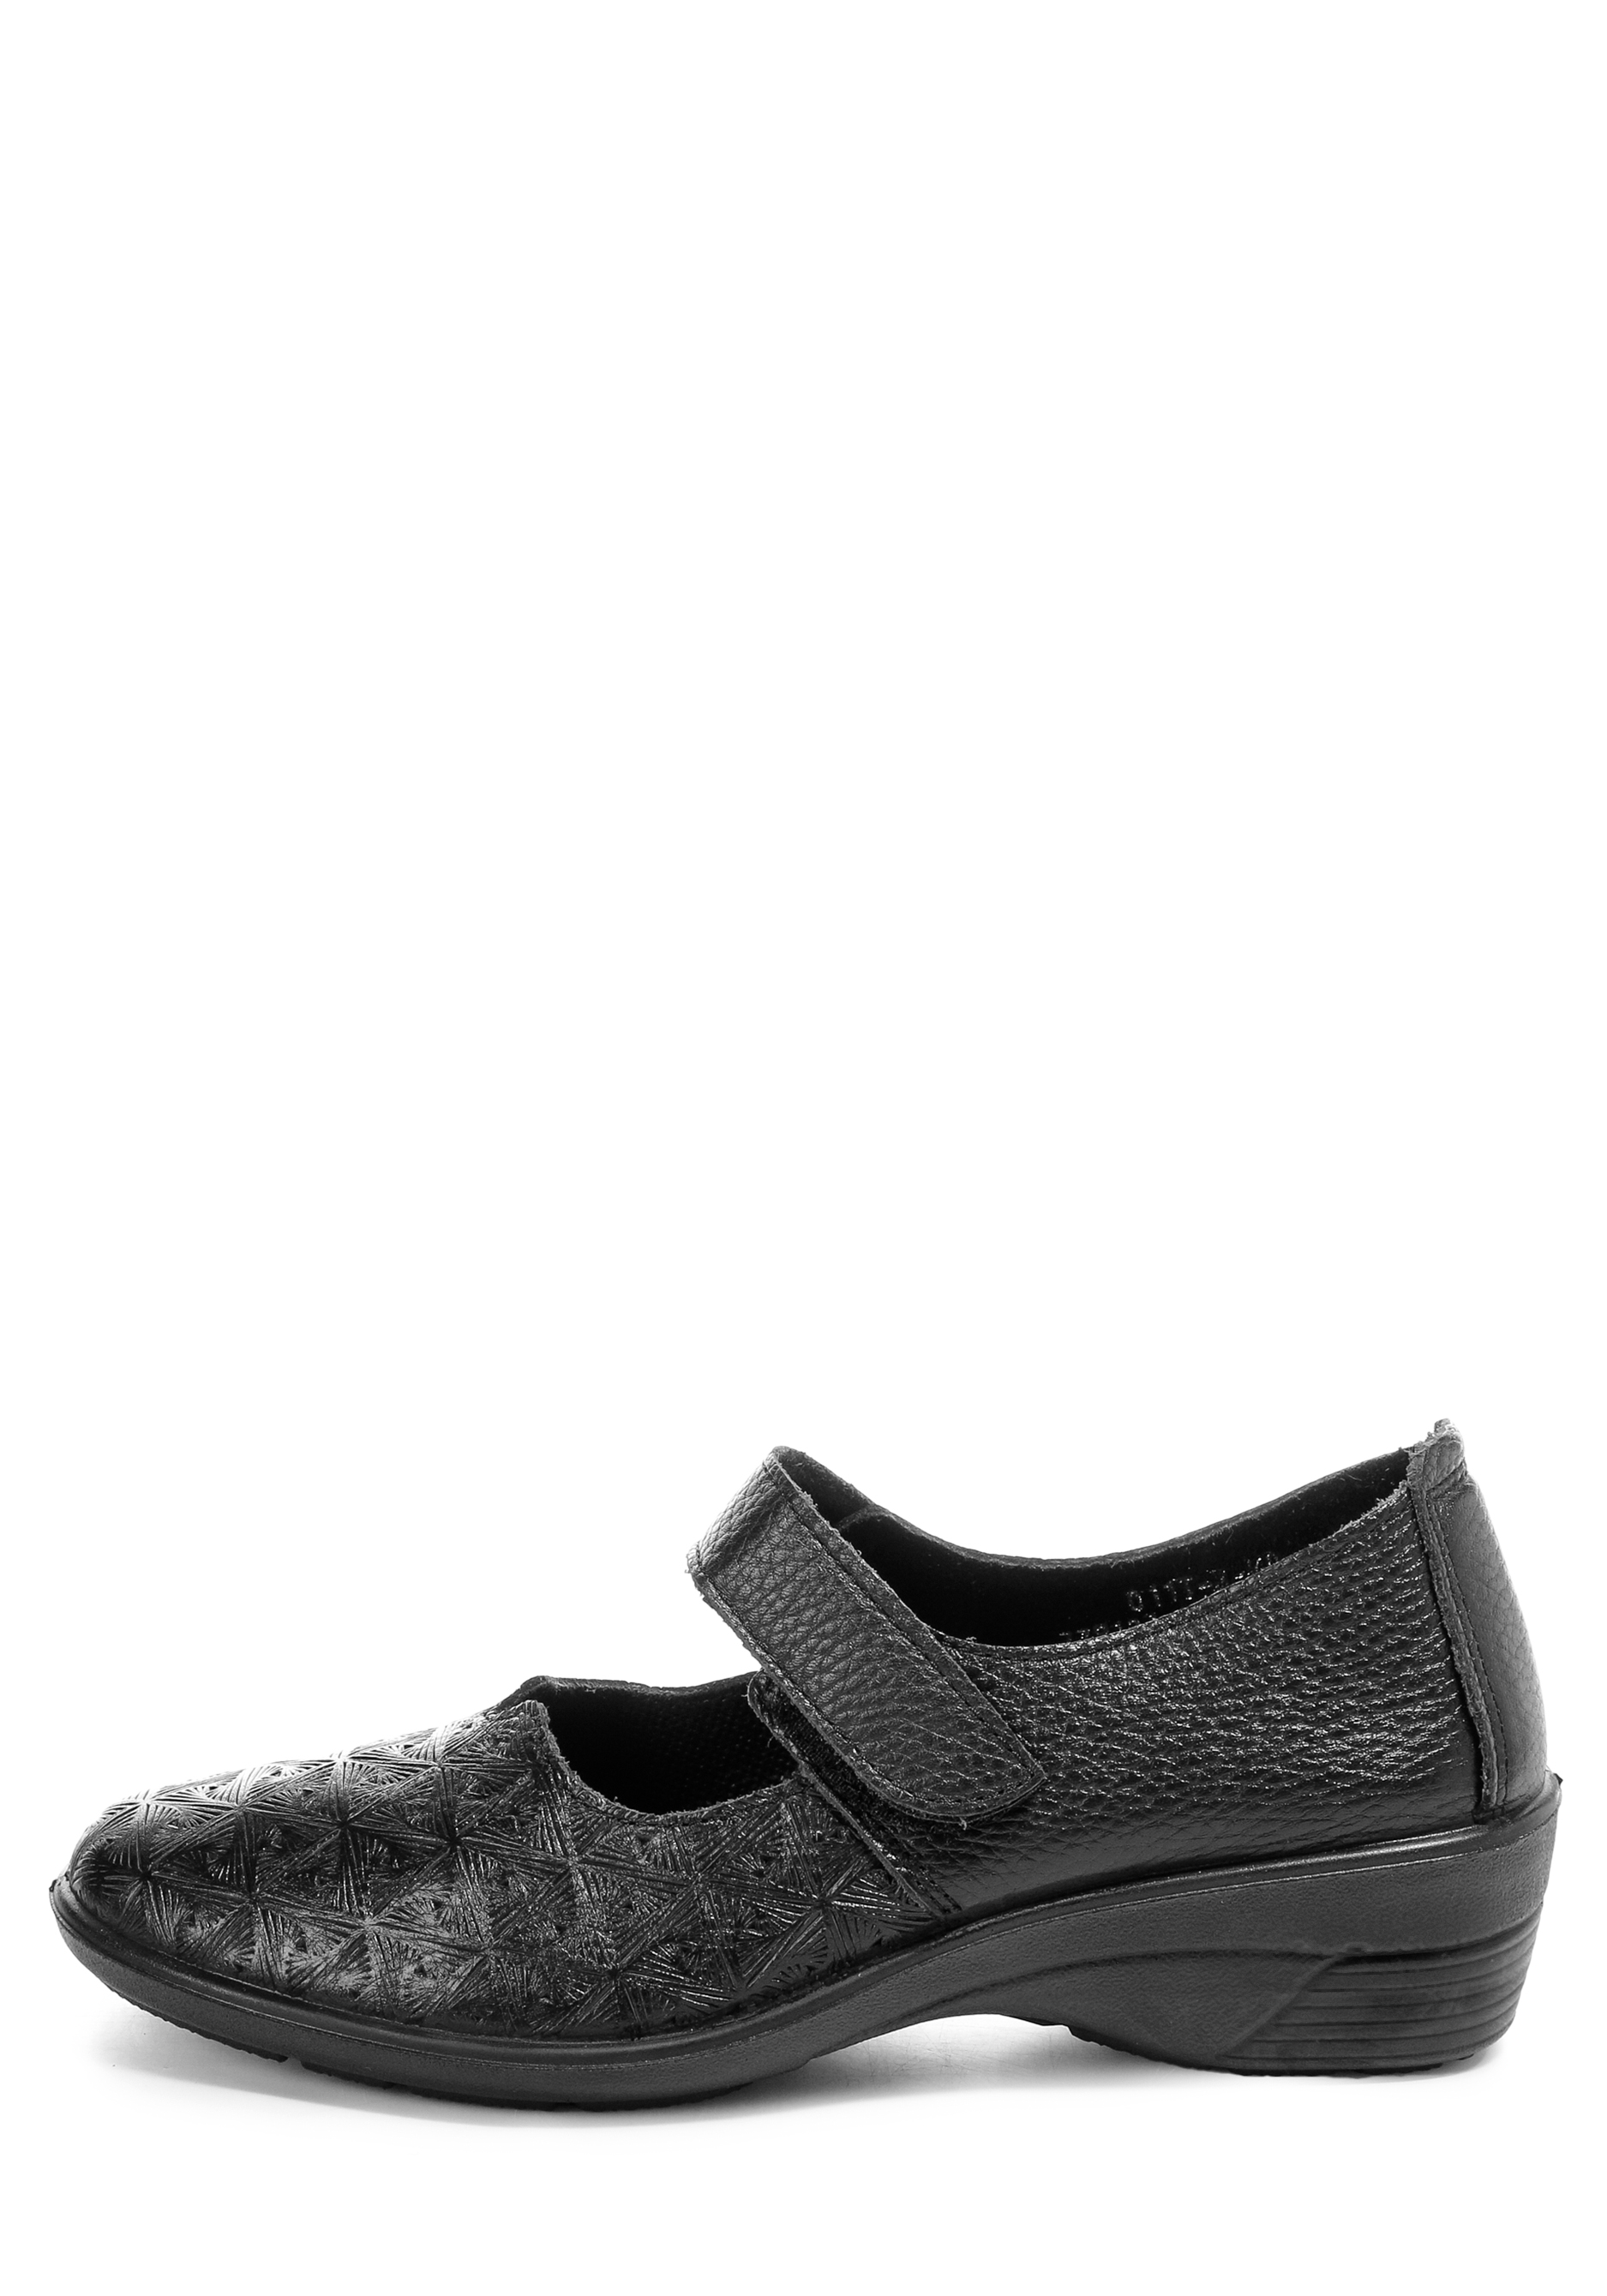 Туфли женские "Русана" Almi, размер 39, цвет черный - фото 2